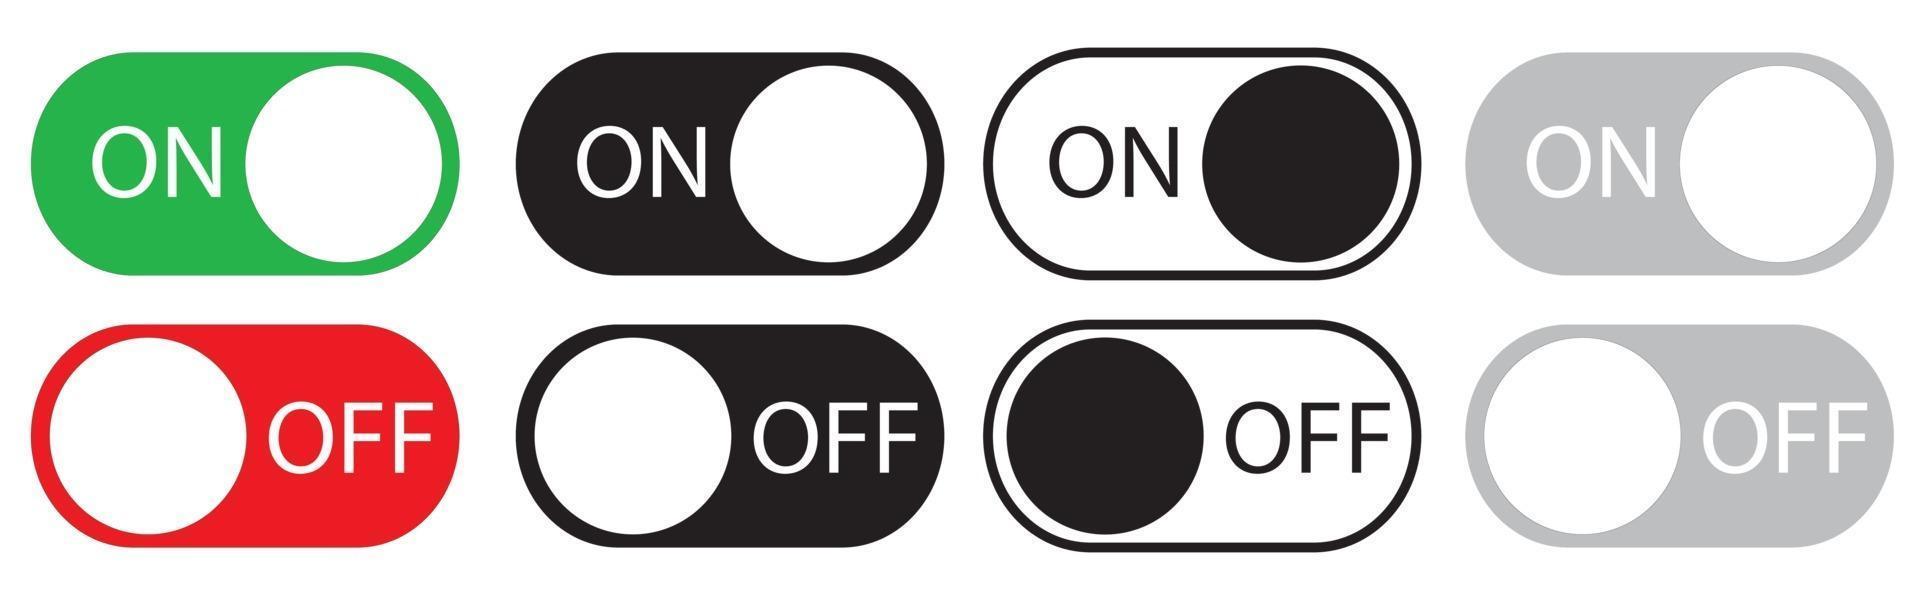 Ein- und Ausschalten des Schaltersymbols sett.toggle switch buttons vektor